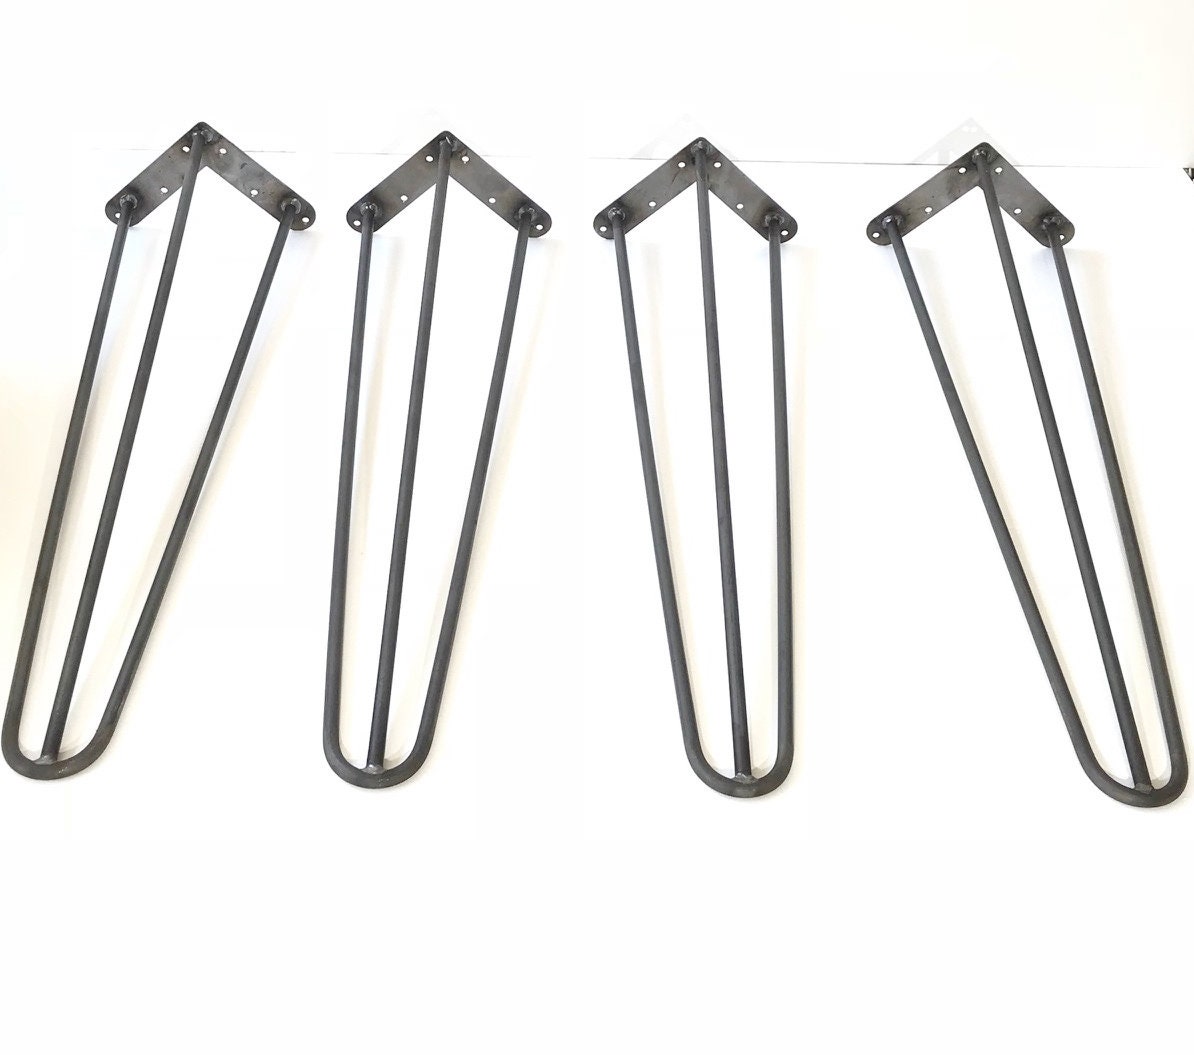 Hairpin Metal Table Legs 428 Hairpin Legs Price - Etsy UK